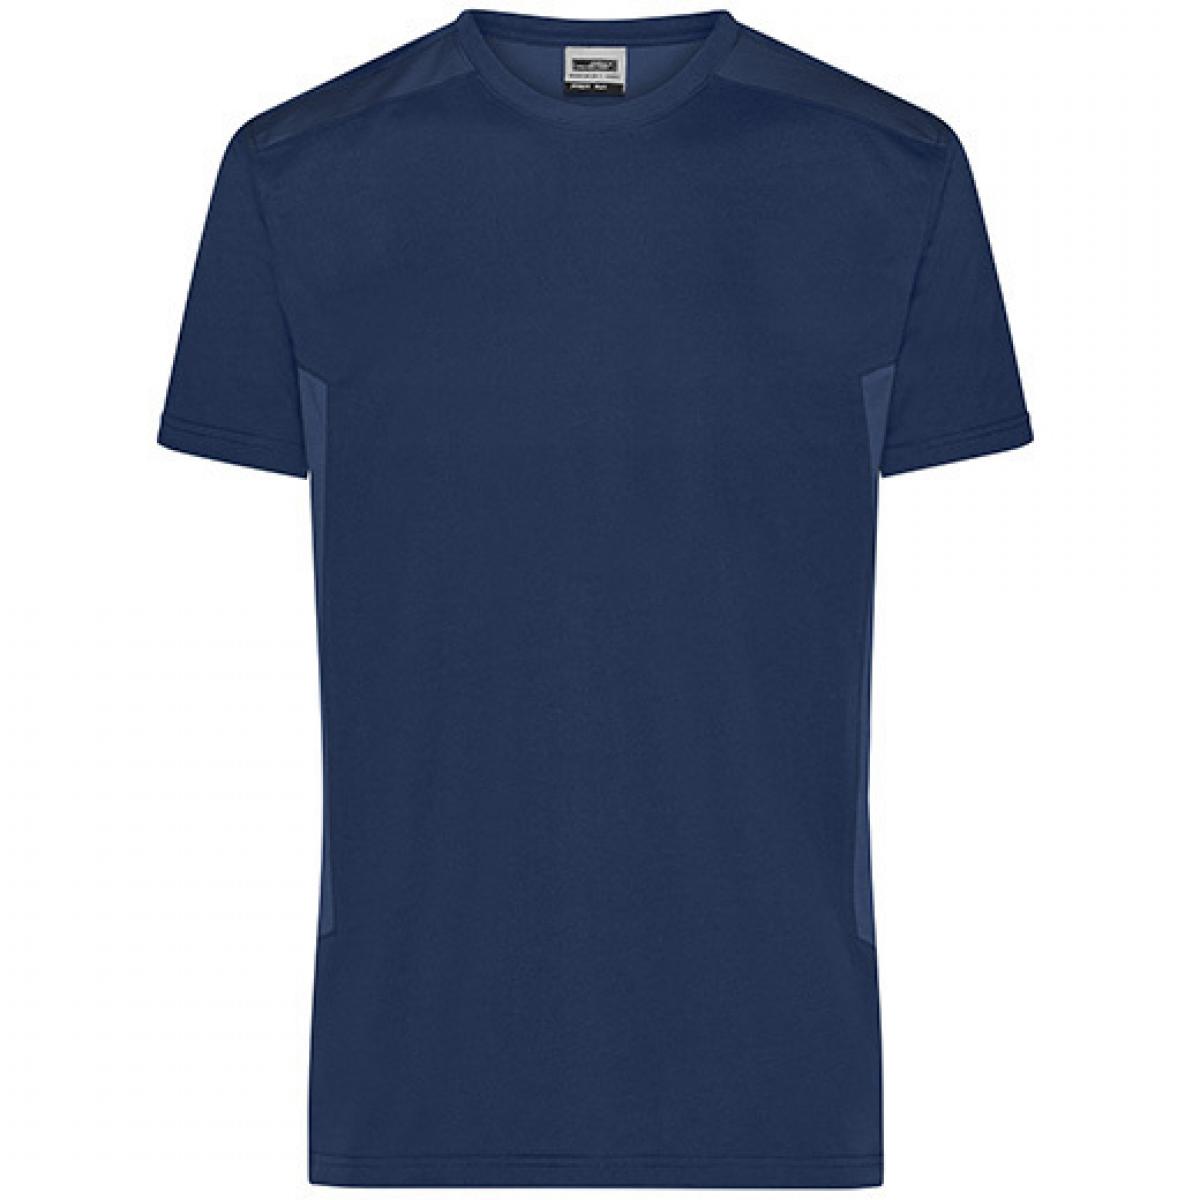 Hersteller: James+Nicholson Herstellernummer: JN1824 Artikelbezeichnung: Herren T, Men‘s Workwear T-Shirt -STRONG-Waschbar bis 60 °C Farbe: Navy/Navy